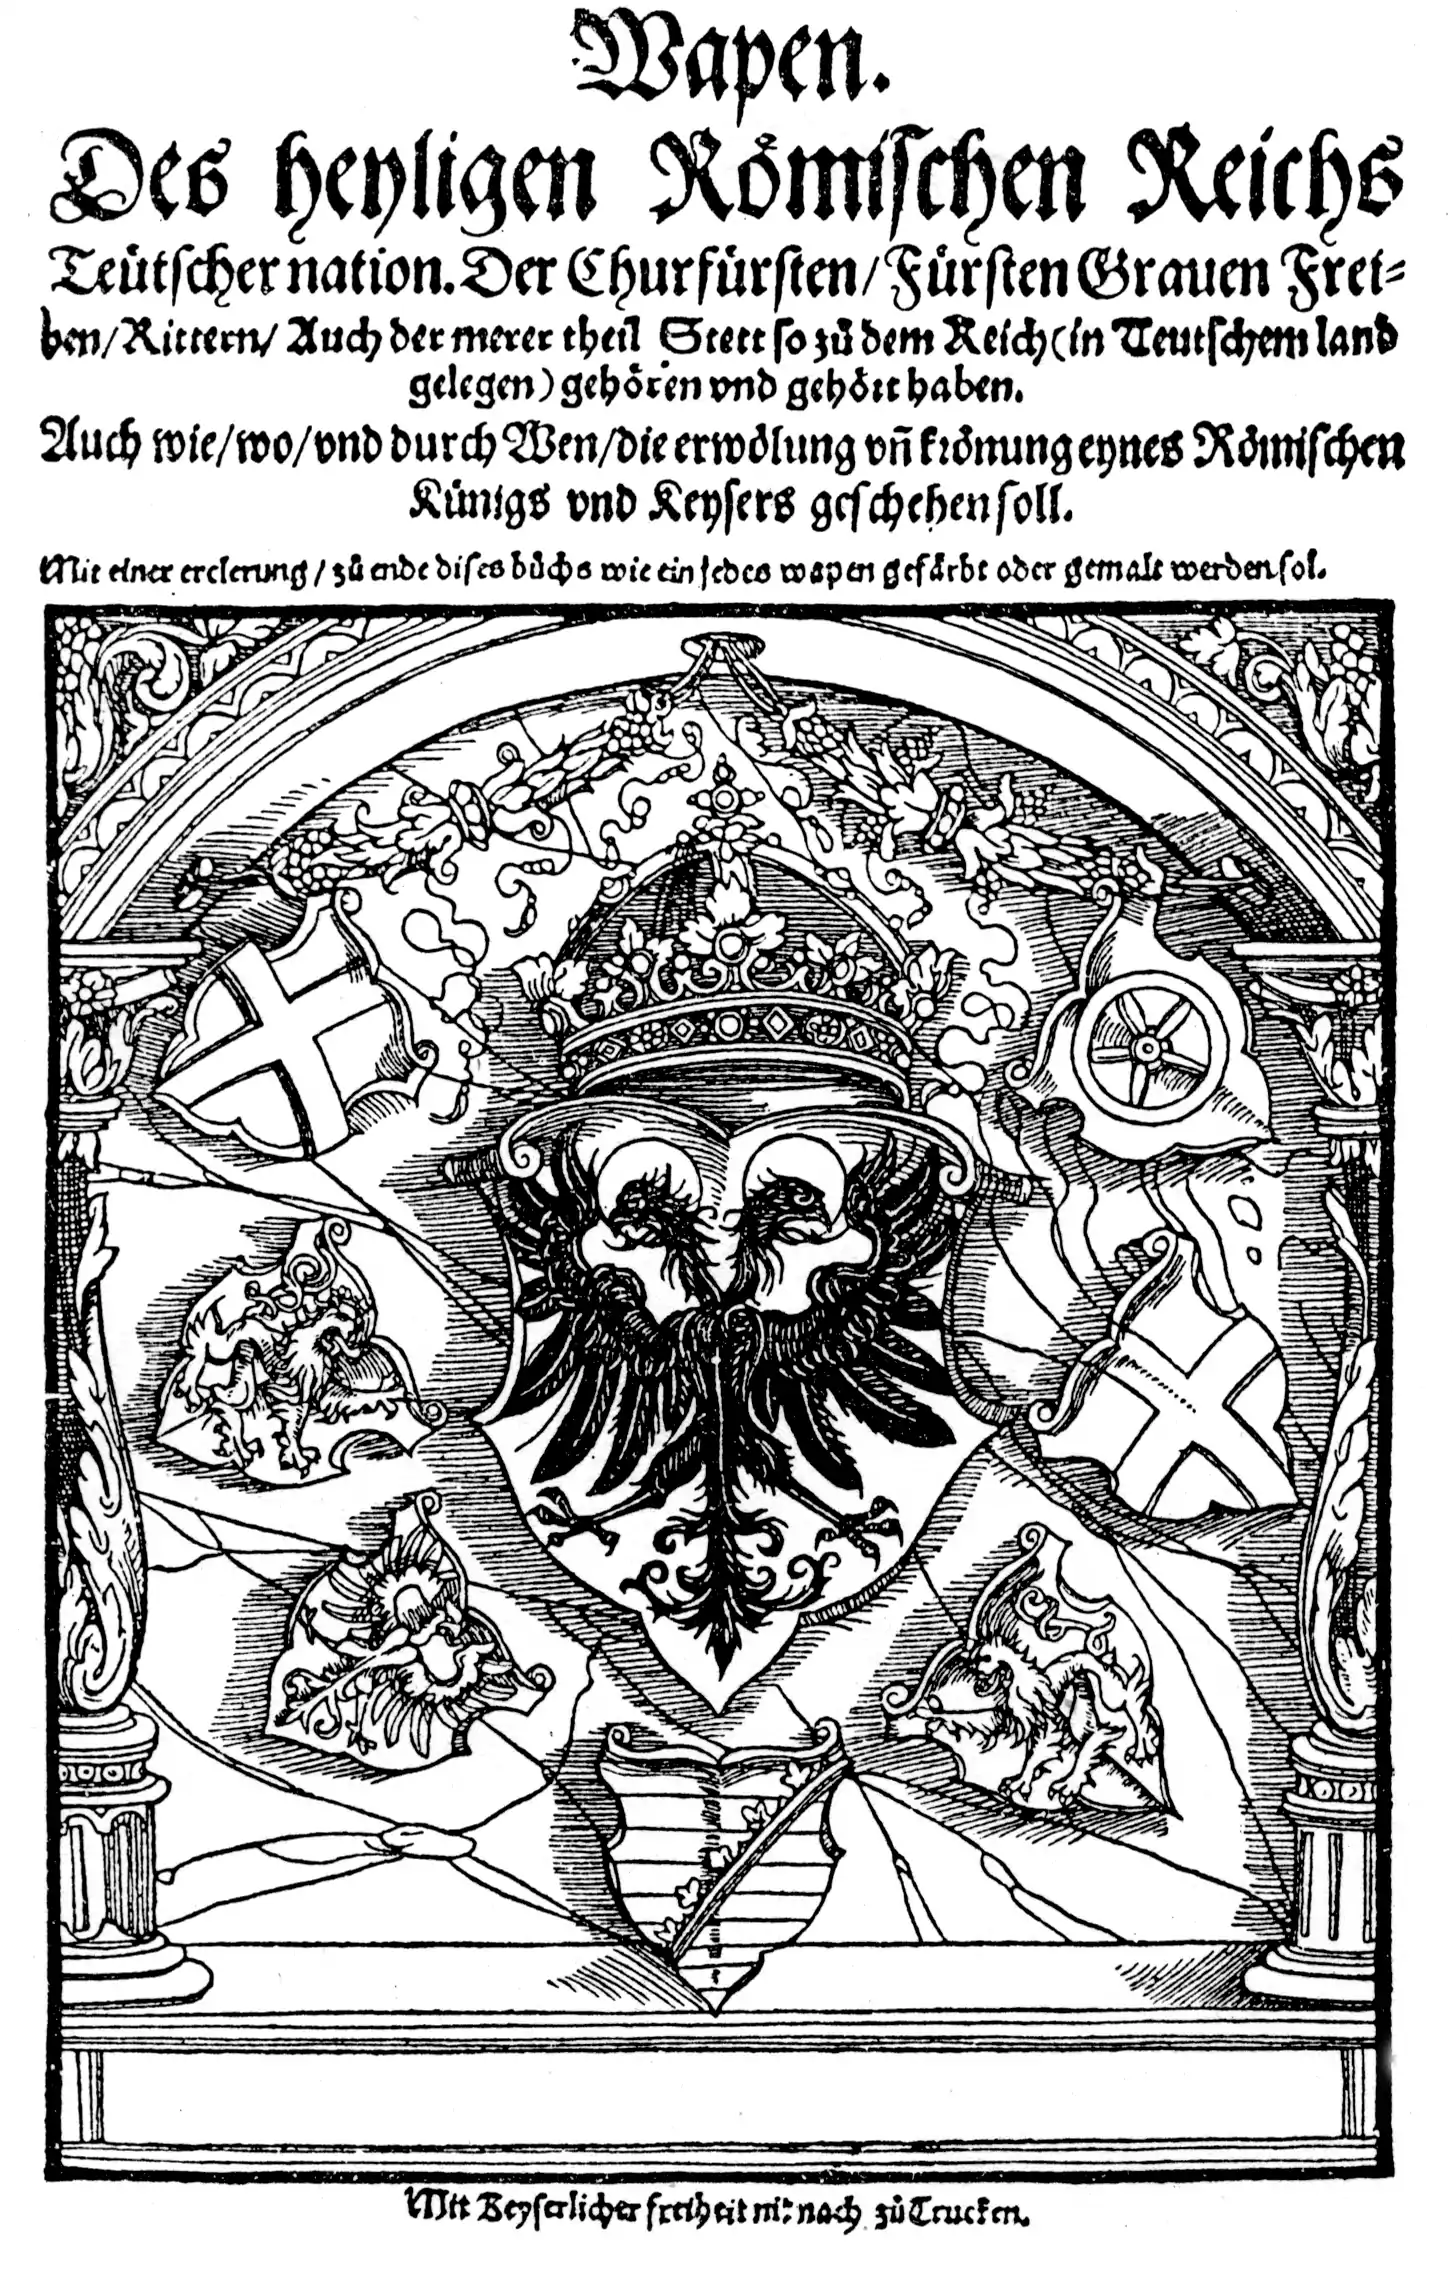 Wappen des Heiligen Römischen Reiches Deutscher Nation, um 1500